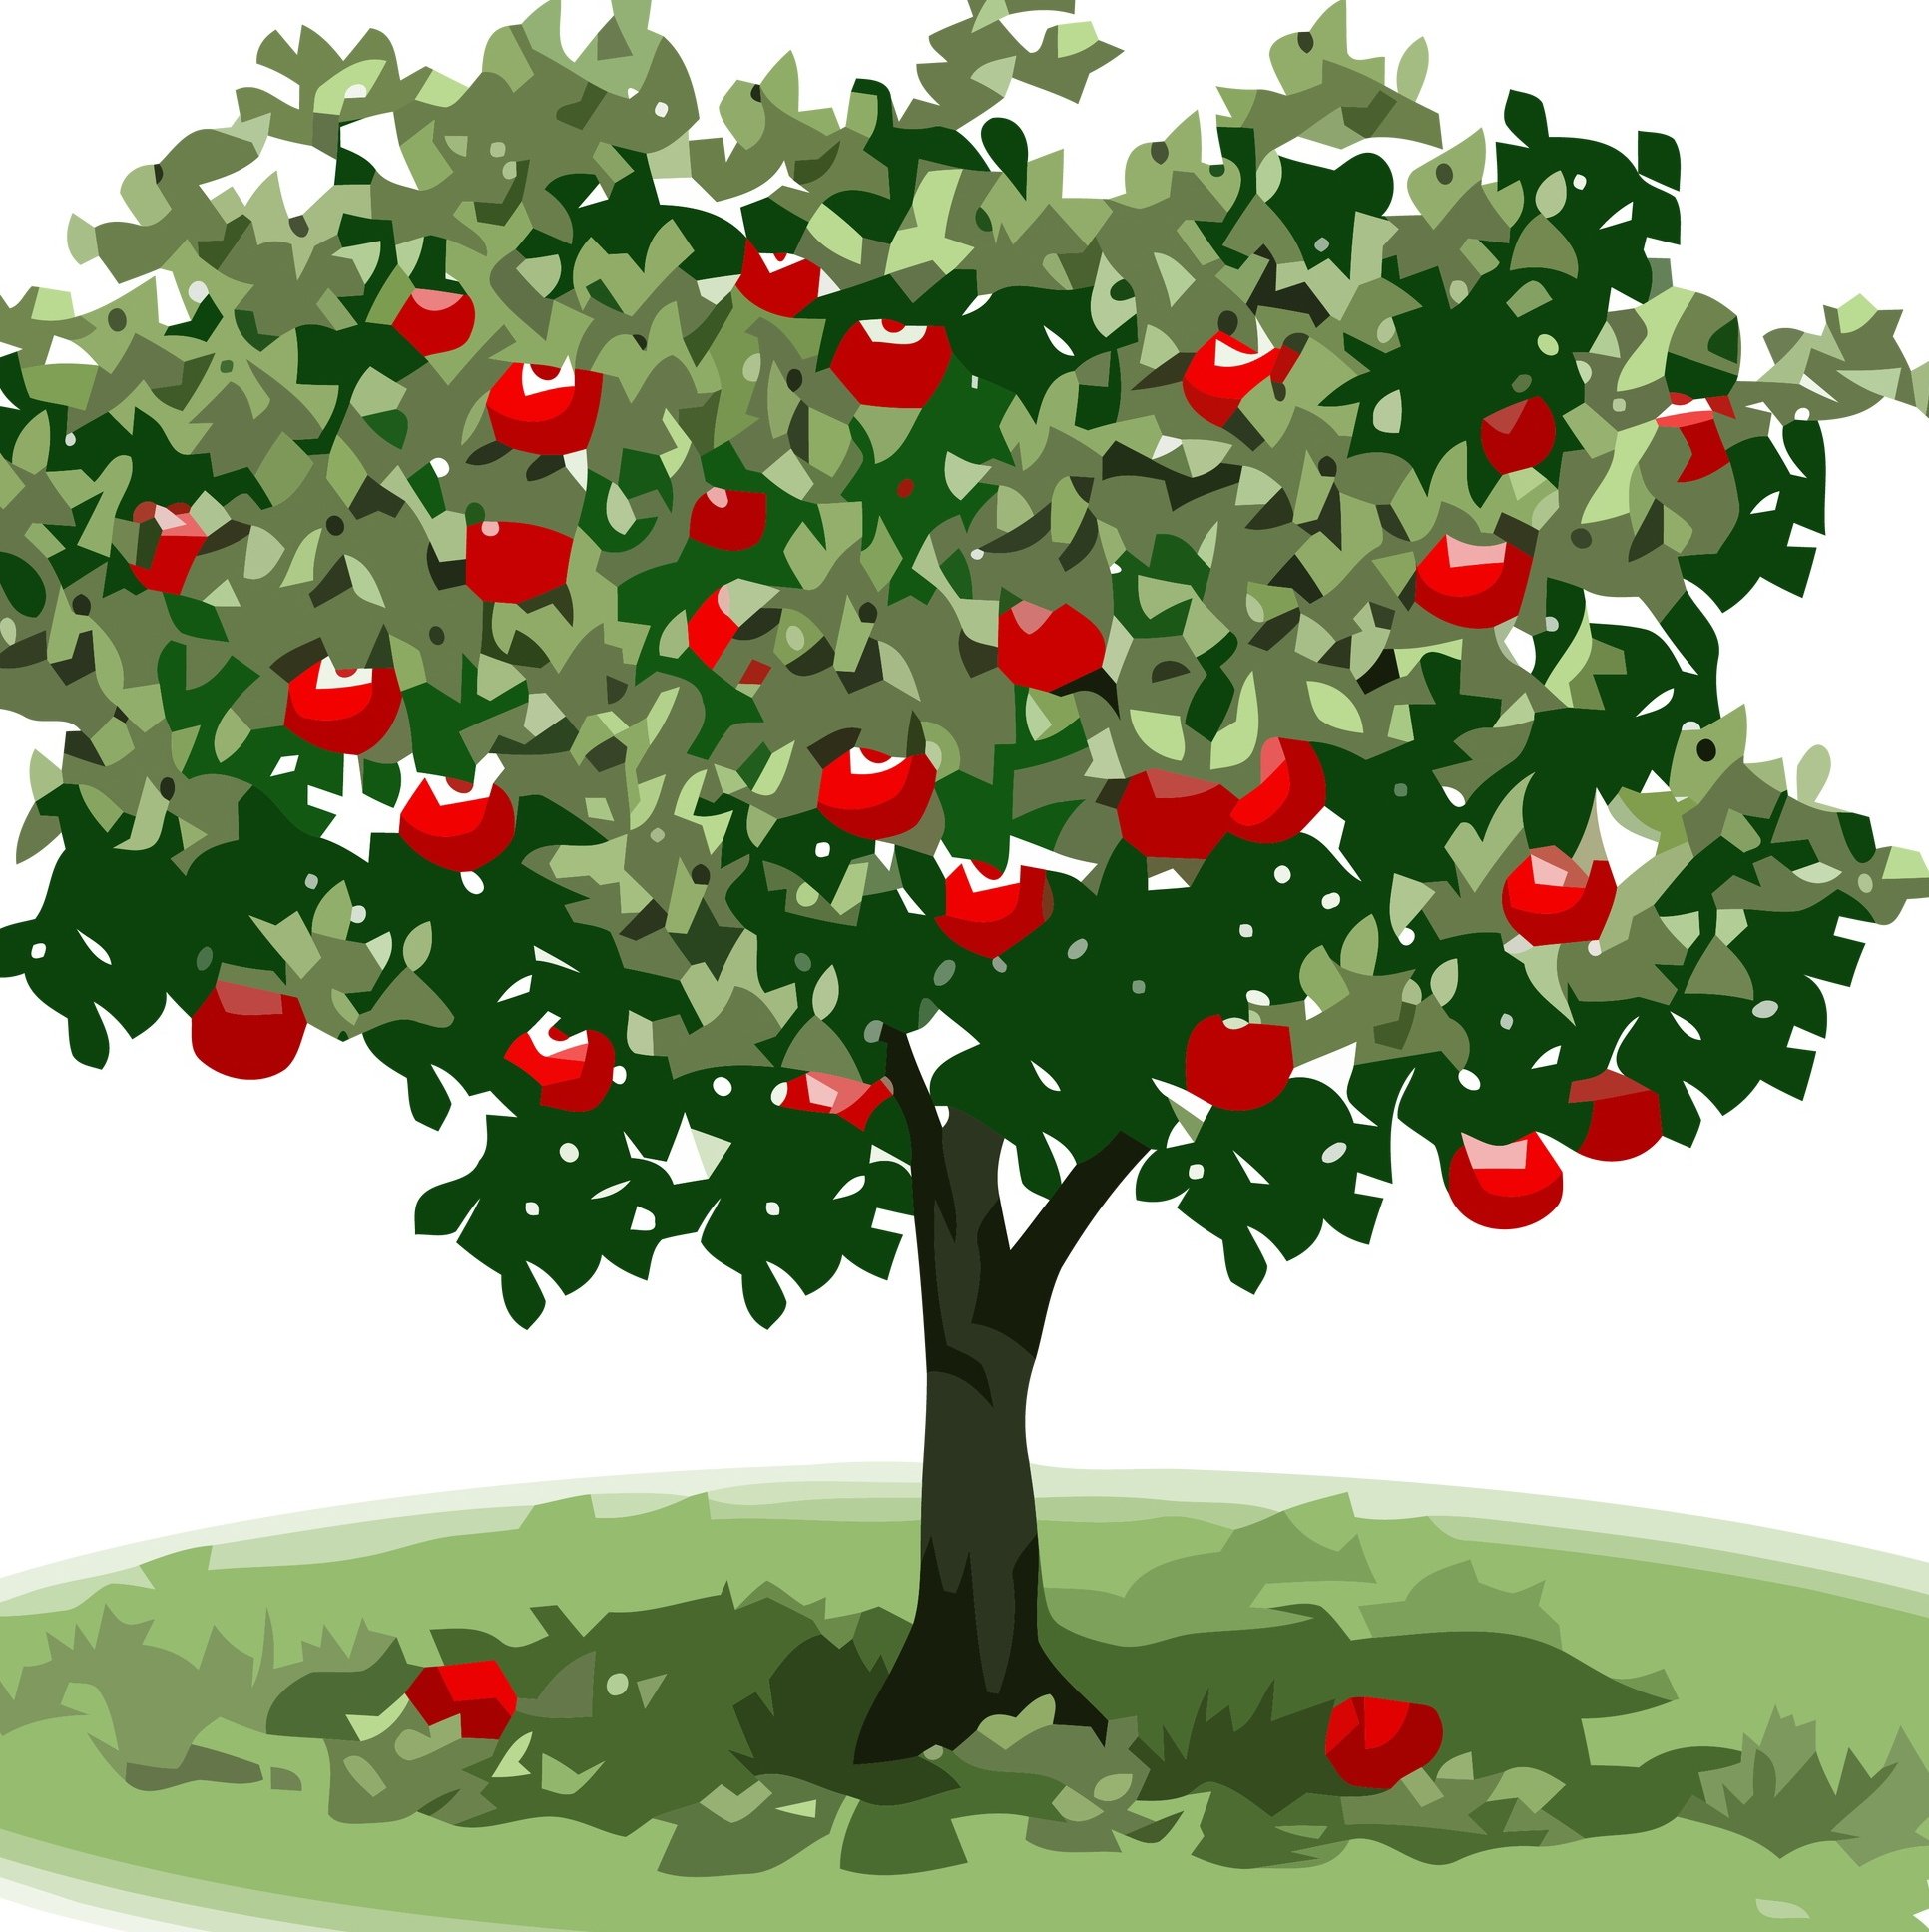 Включи яблонь. Яблоня дерево. Яблоня дерево для детей. Дерево яблоня с яблоками. Дерево с яблоками для детей.